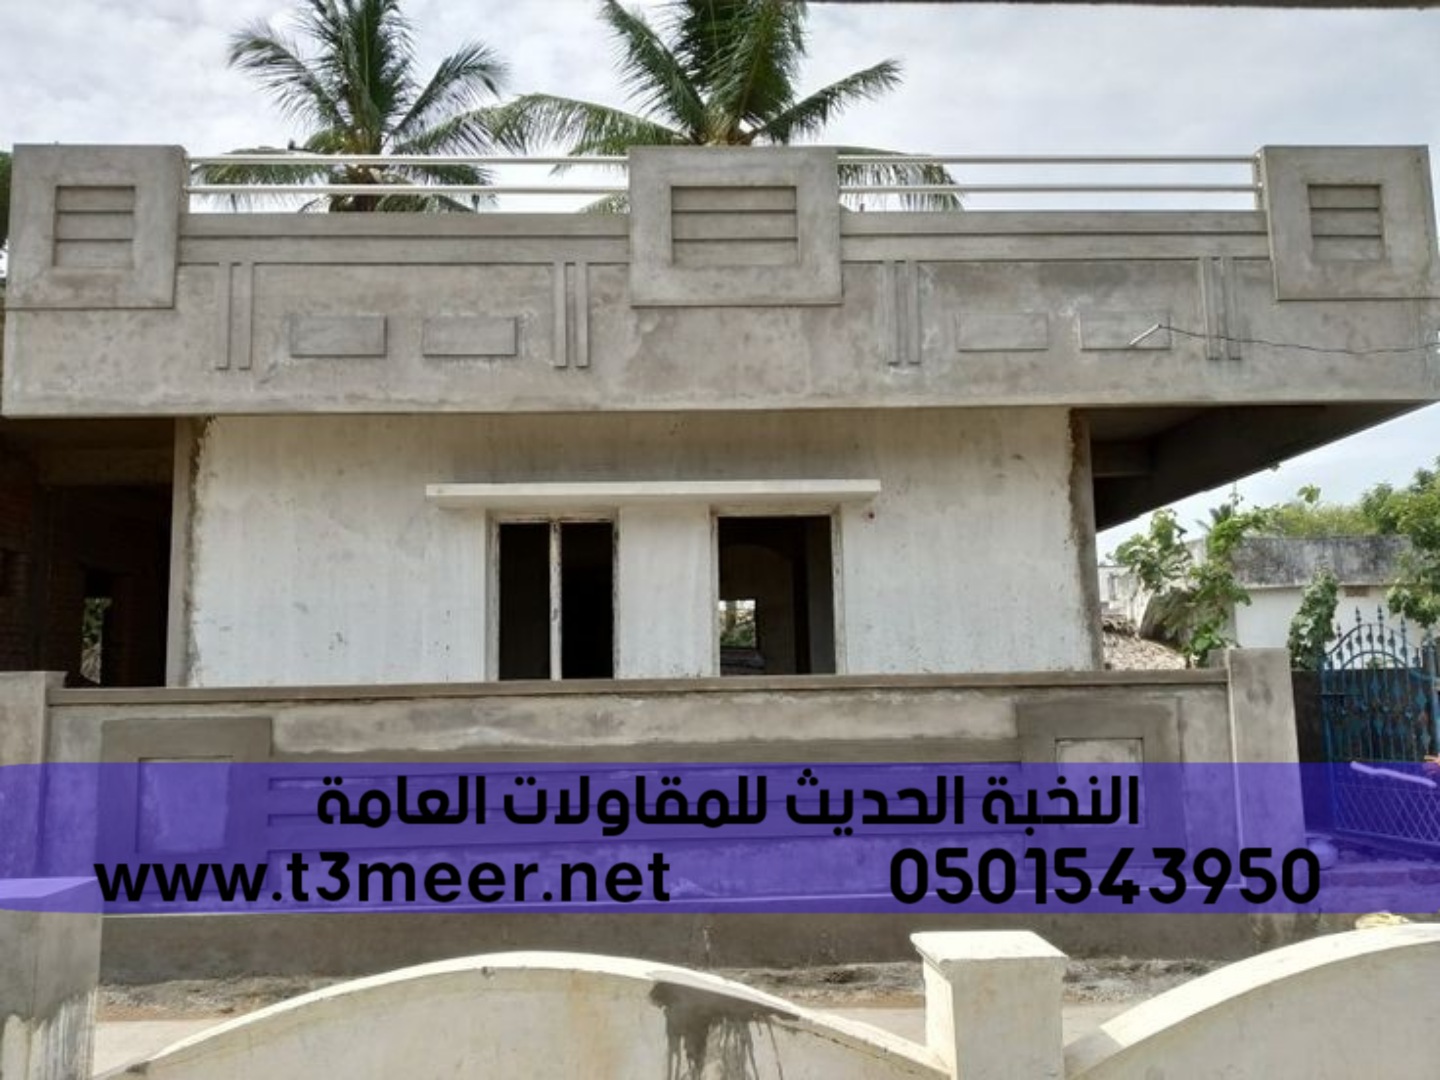 افضل مؤسسة بناء ترميم تشطيب مباني في جدة , 0501543950 P_2275ncp2r4